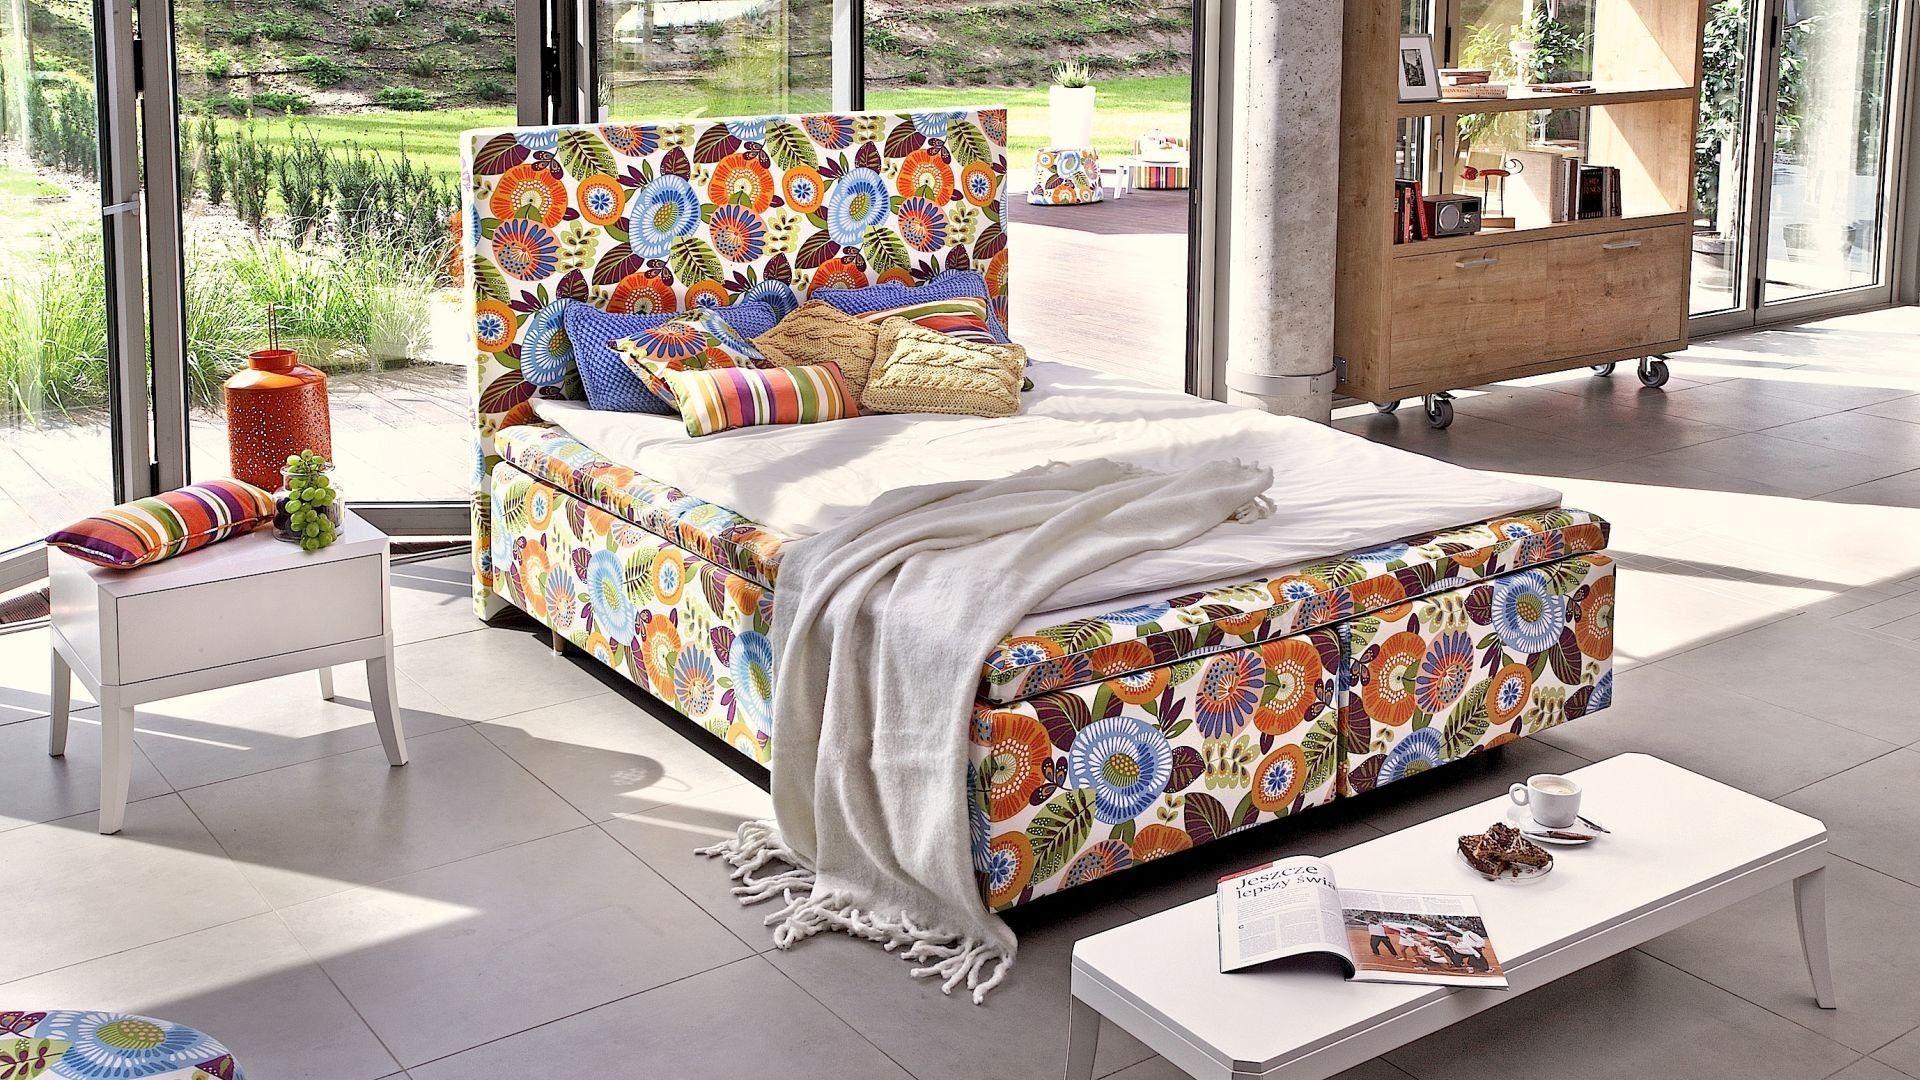 Łóżko kontynentalne Duke ma multikolorową tapicerkę. Ożywi każde wnętrze. Fot. Swarzędz Home